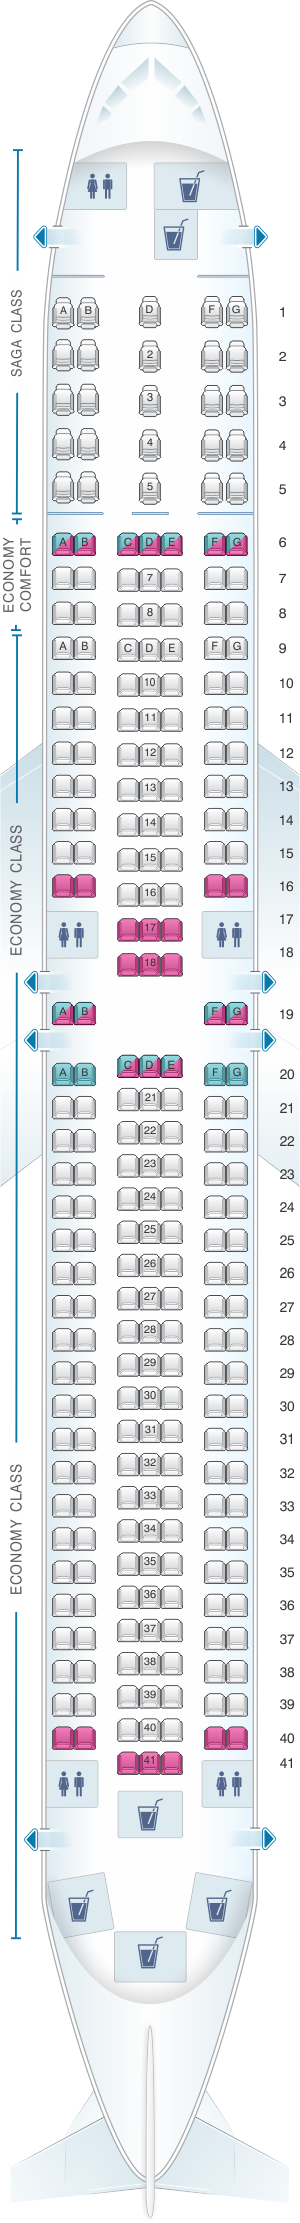 Icelandair Seating Chart